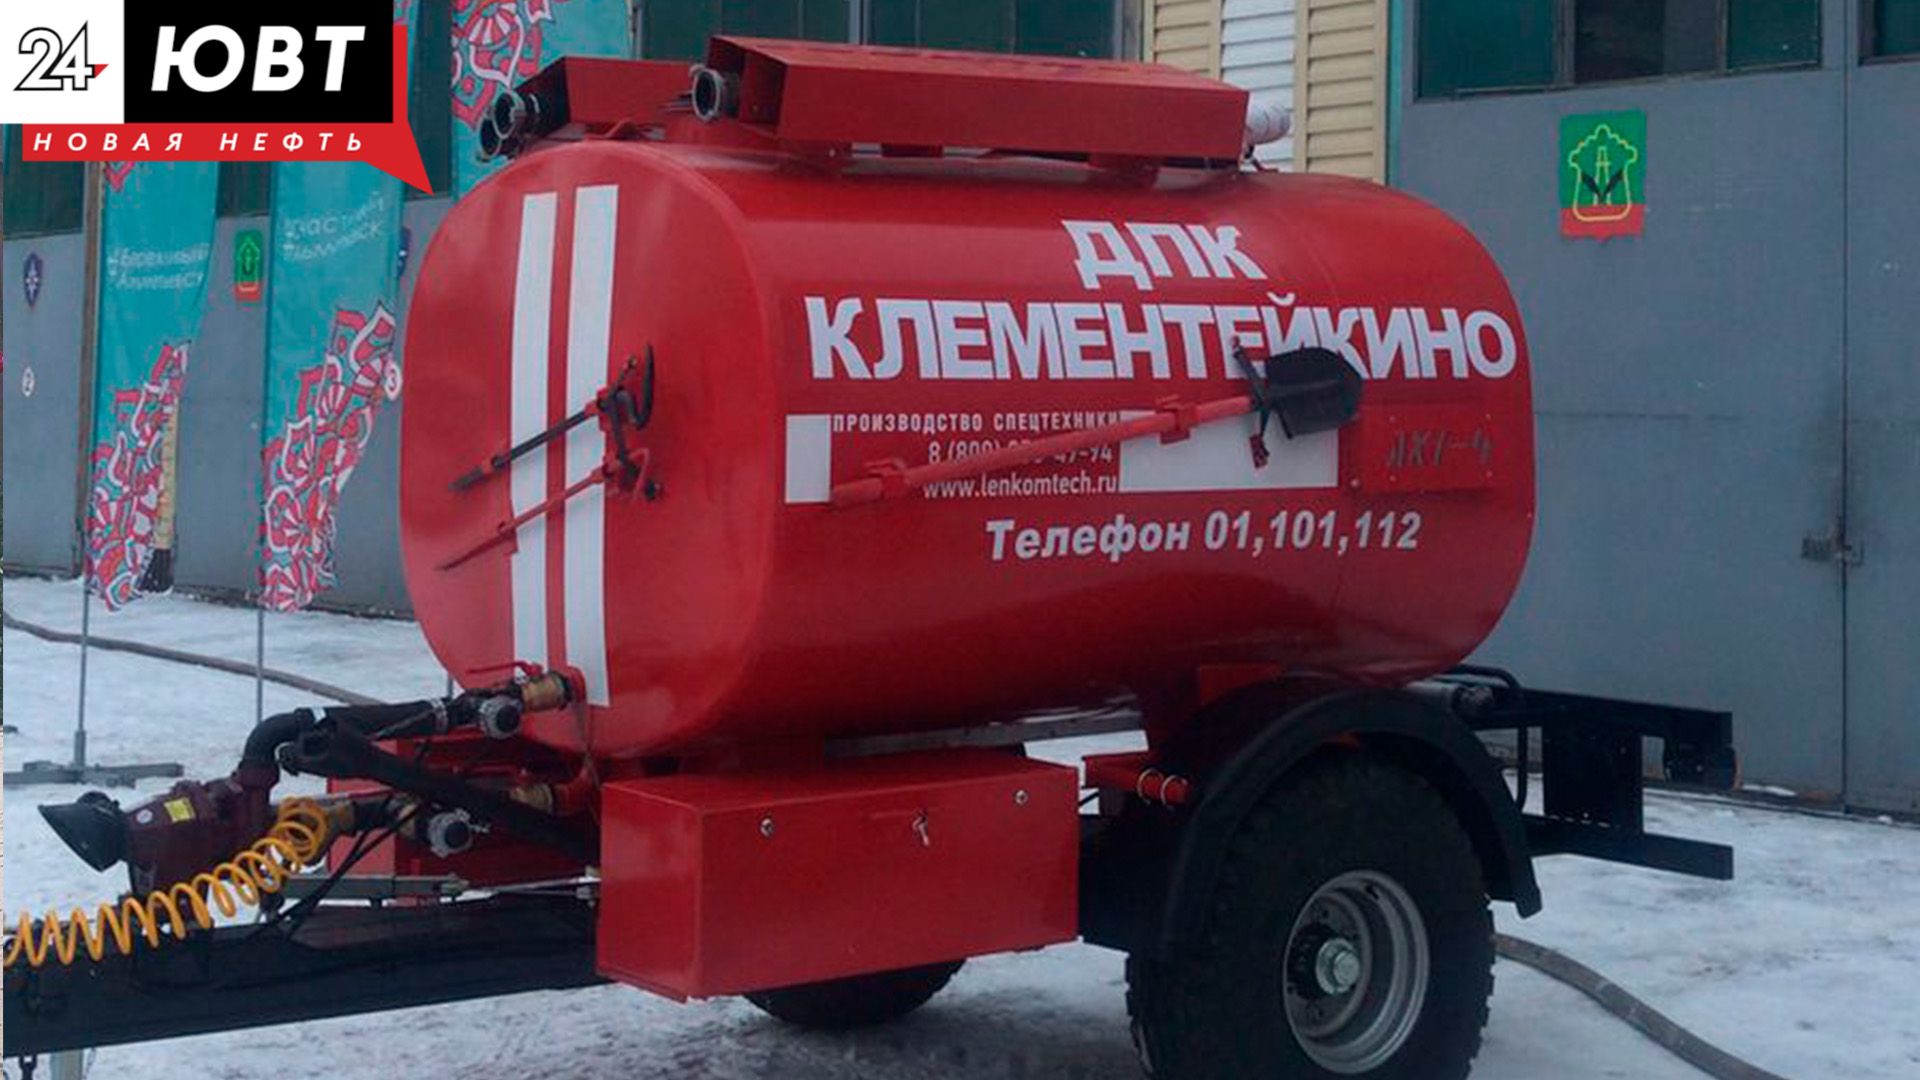 Трём сельским поселениям Альметьевского района вручили новую пожарную технику